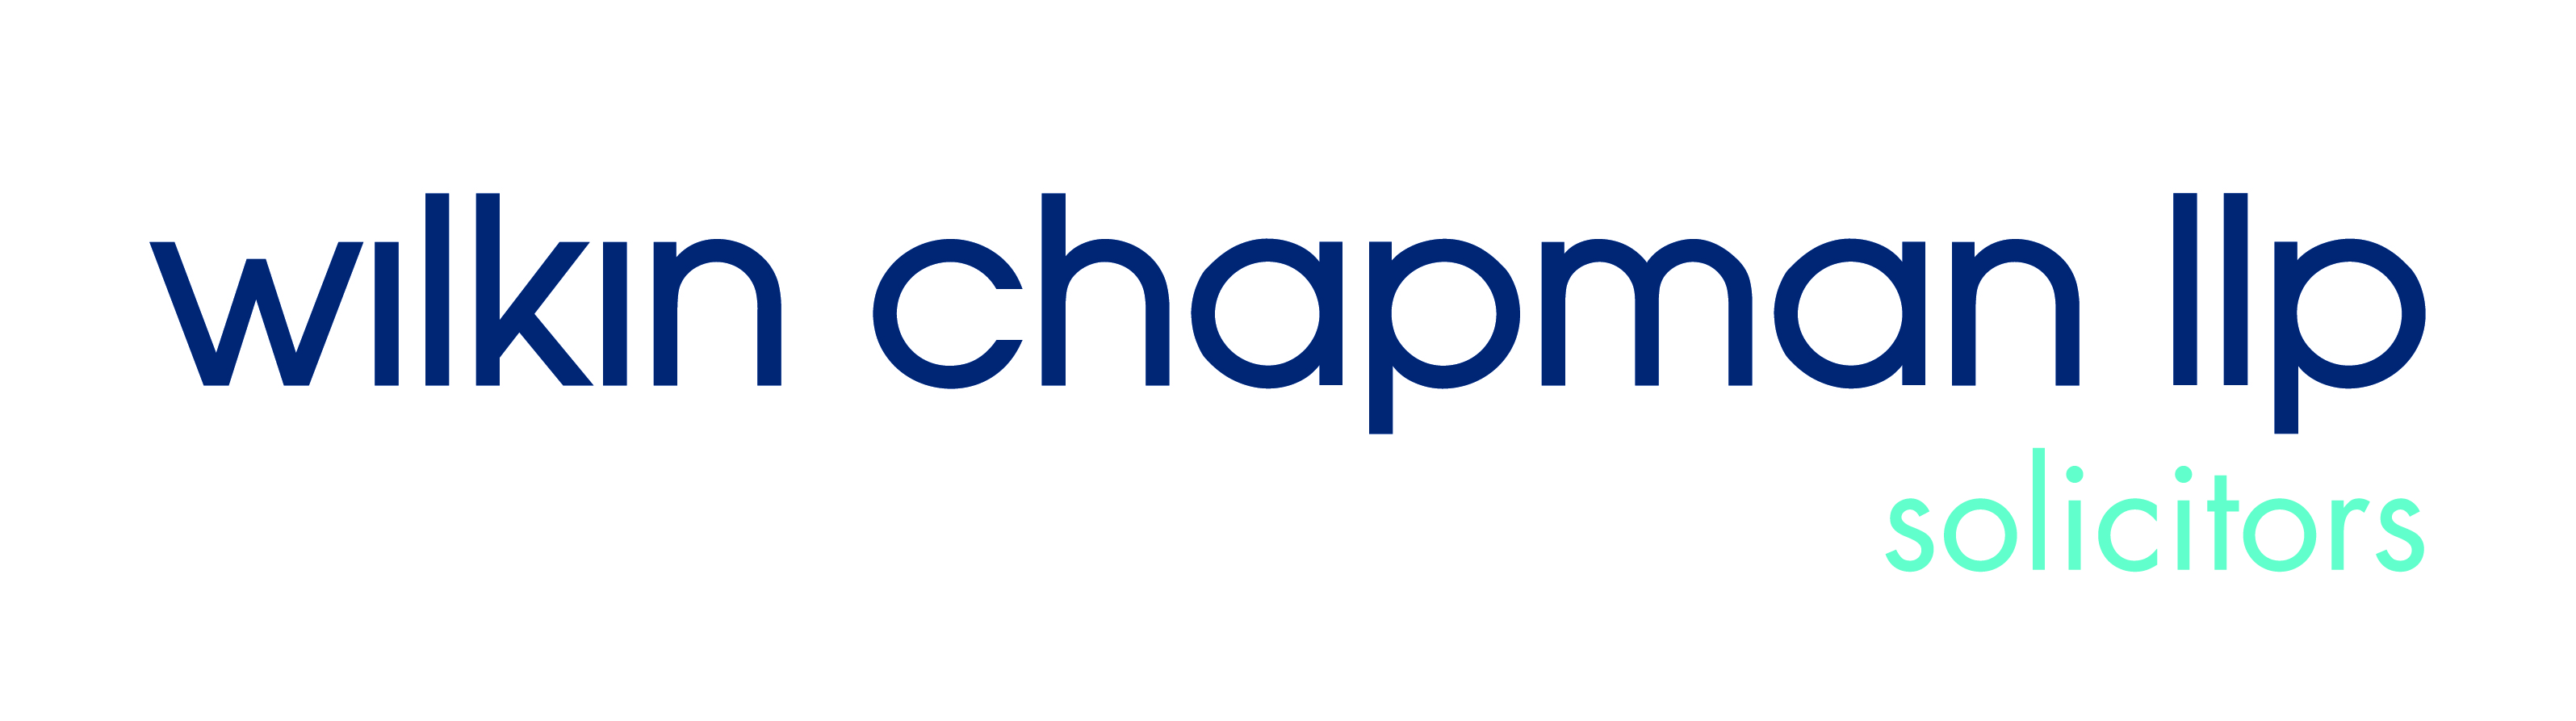 Wilkin Chapman logo CMYK.jpg